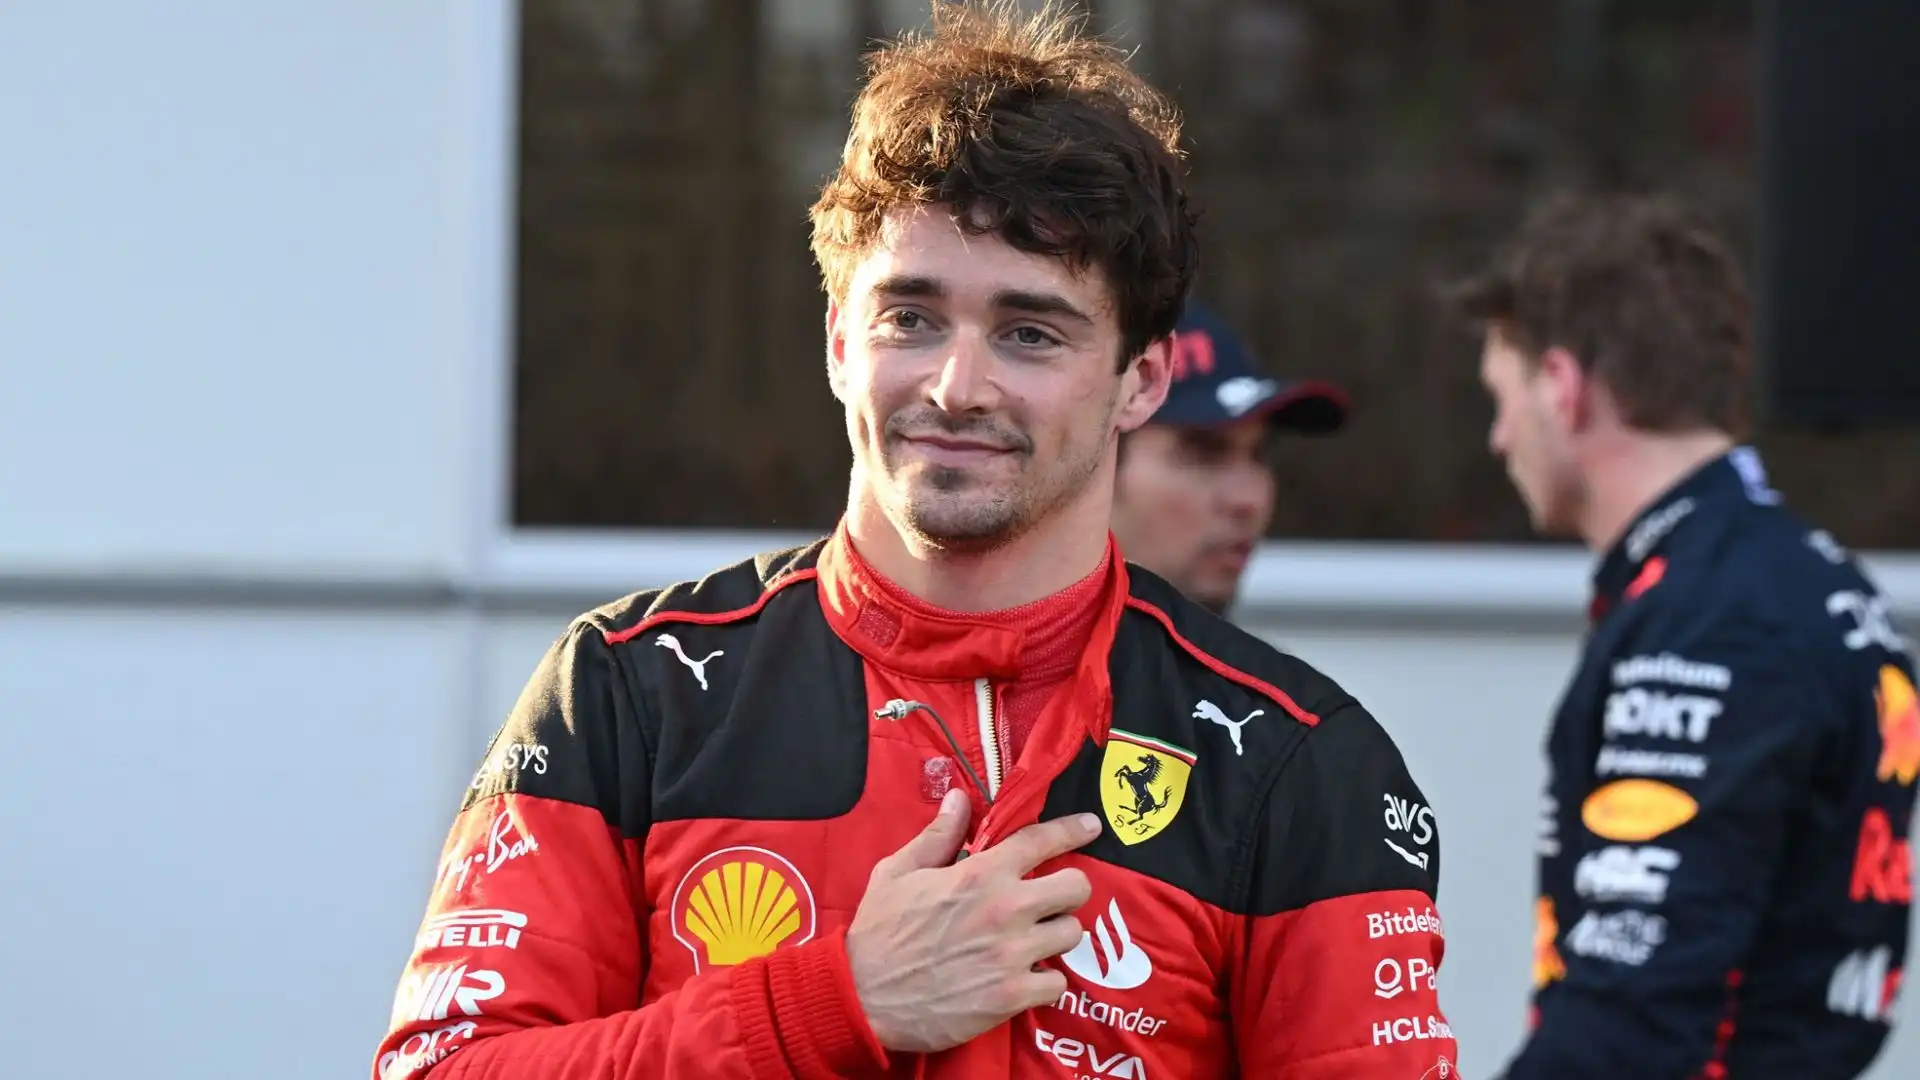 Al momento della firma, secondo quanto riporta il Corriere dello Sport, Leclerc non sapeva quello che stava per accadere